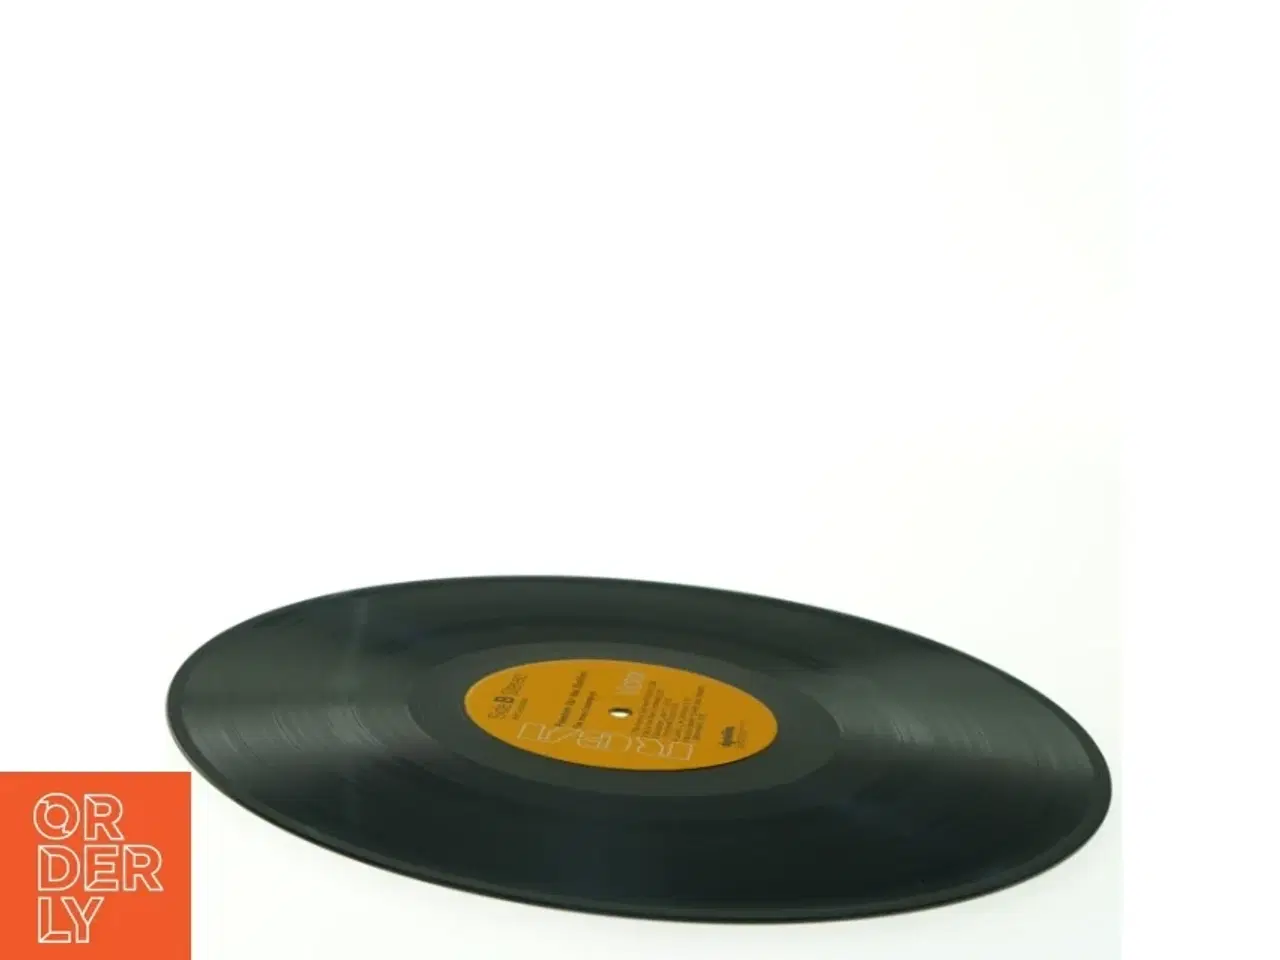 Billede 4 - The Hues Corporation - Freedom For The Stallion Vinyl LP fra RCA (str. 31 x 31 cm)